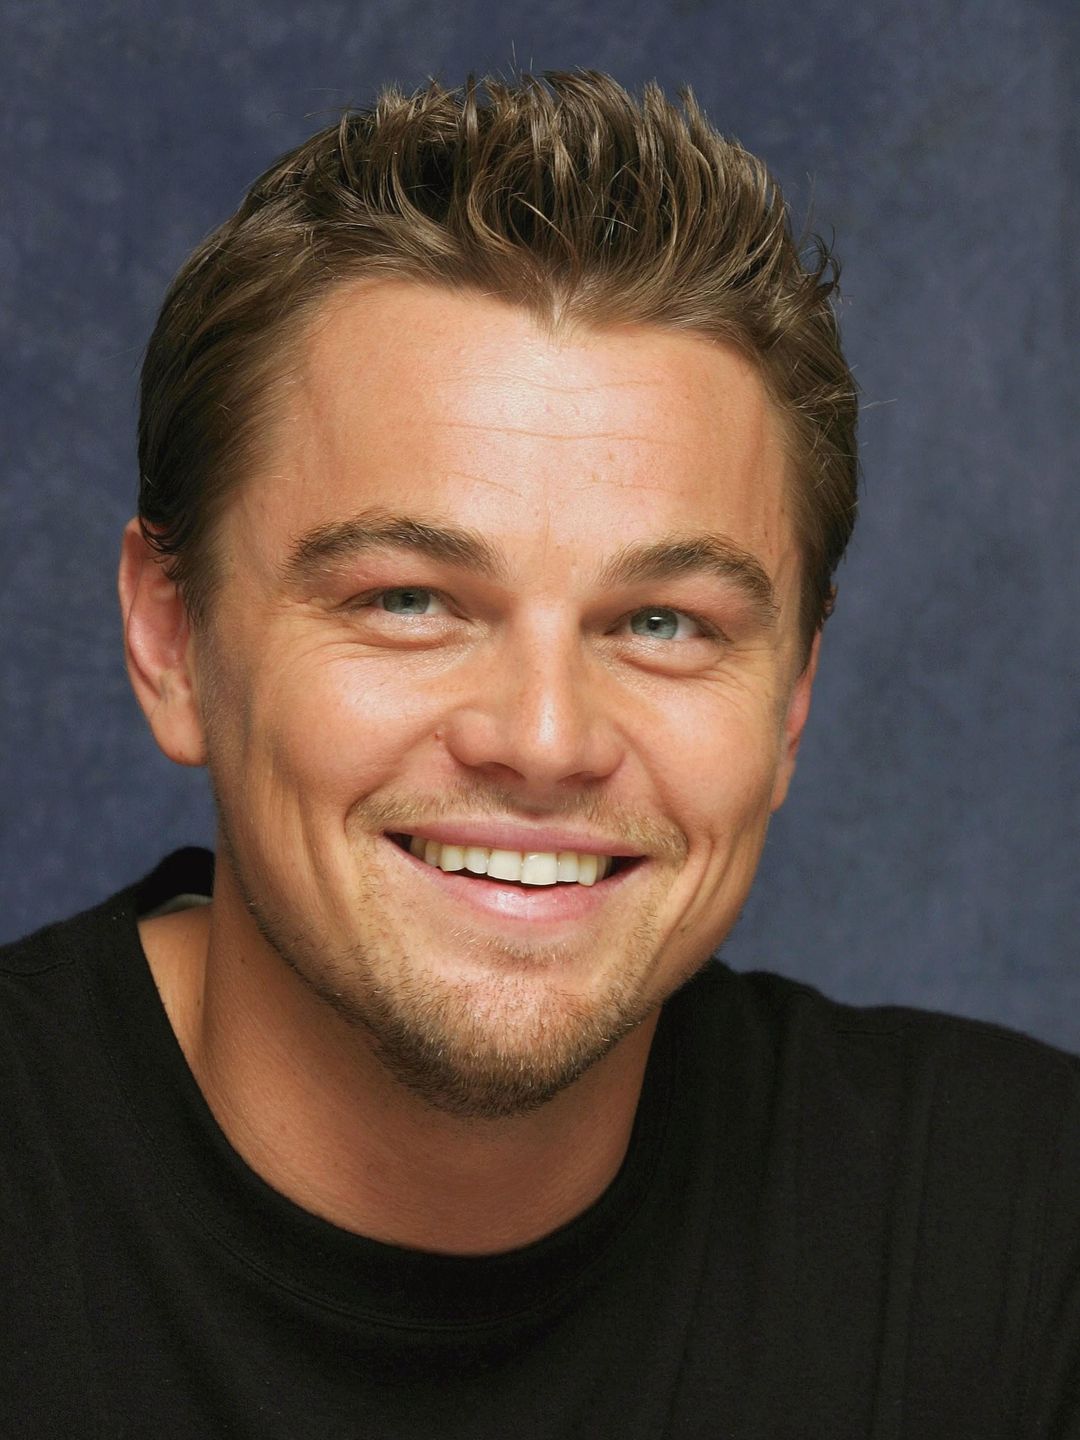 Leonardo DiCaprio personal traits